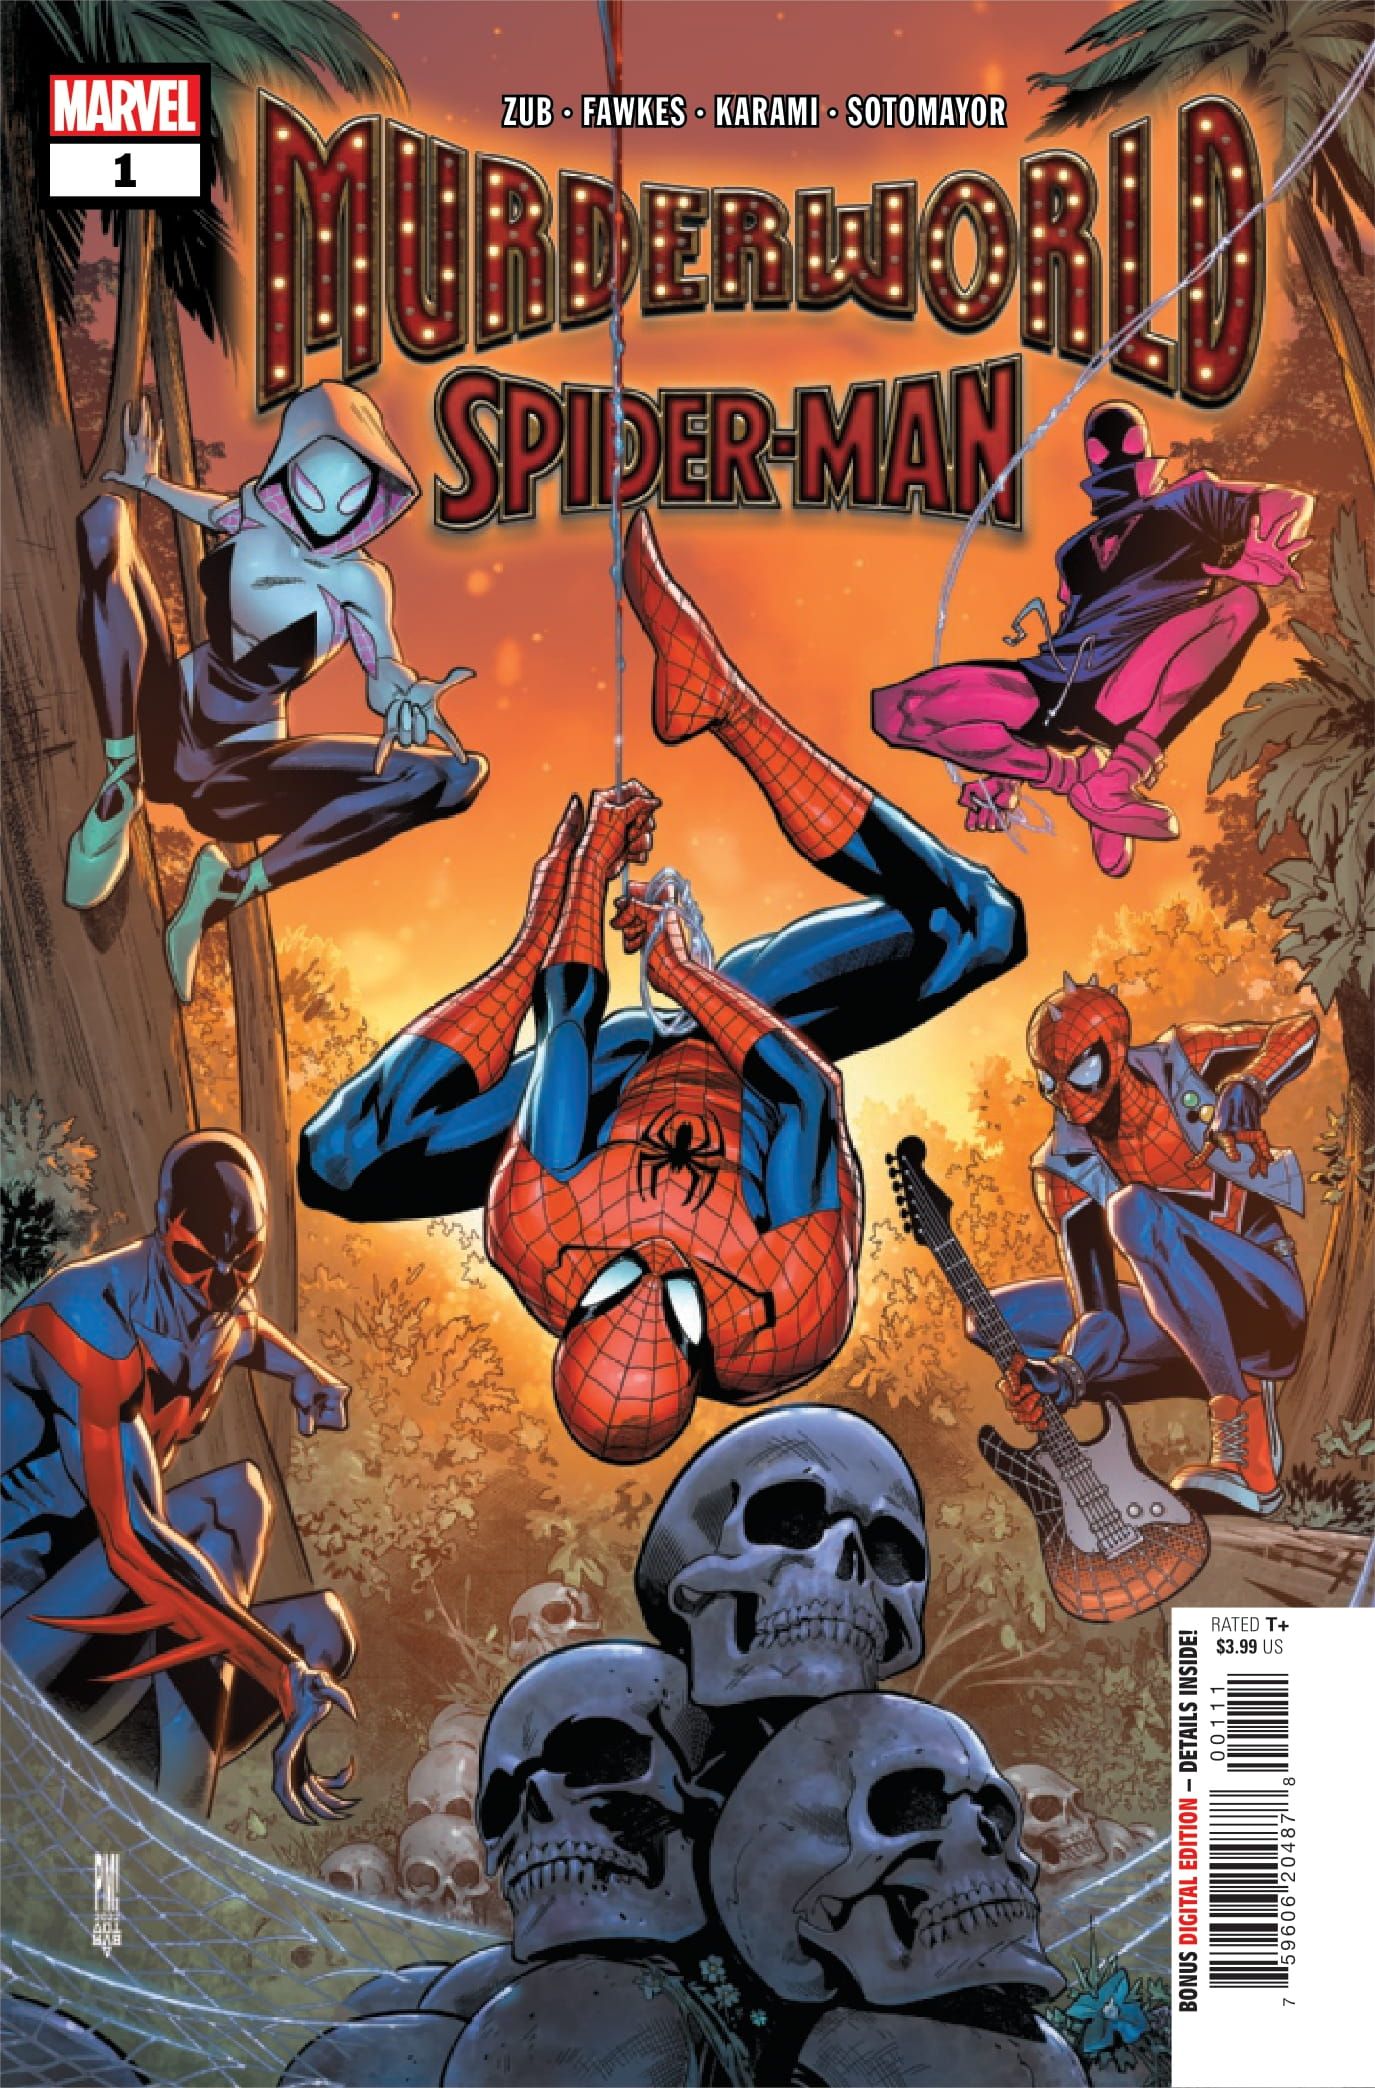 Murderworld: Spider-Man #1 ACover